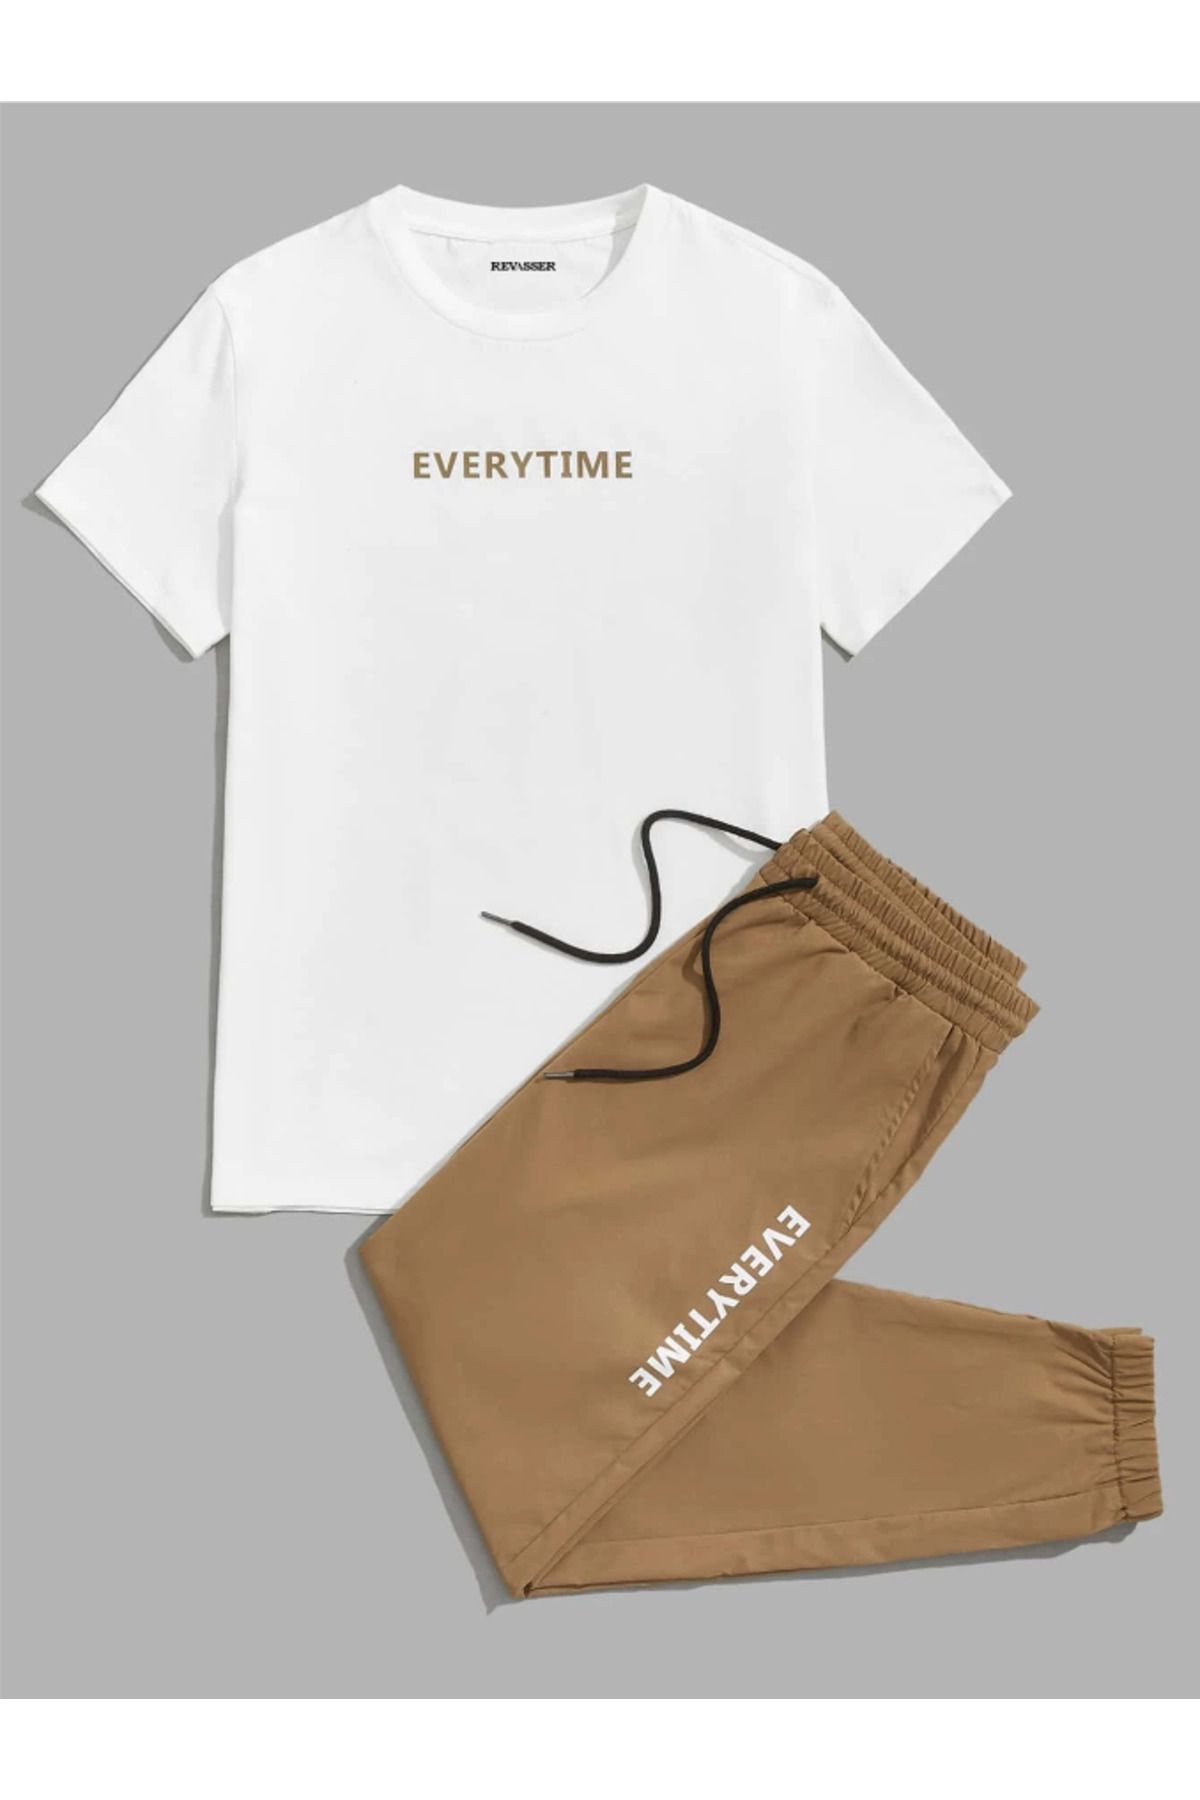 Revasser Unisex Erkek/Kadın Every Time Özel Baskılı Renkli Pamuklu Oversize Jogger T-shirt  Alt Üst Takım